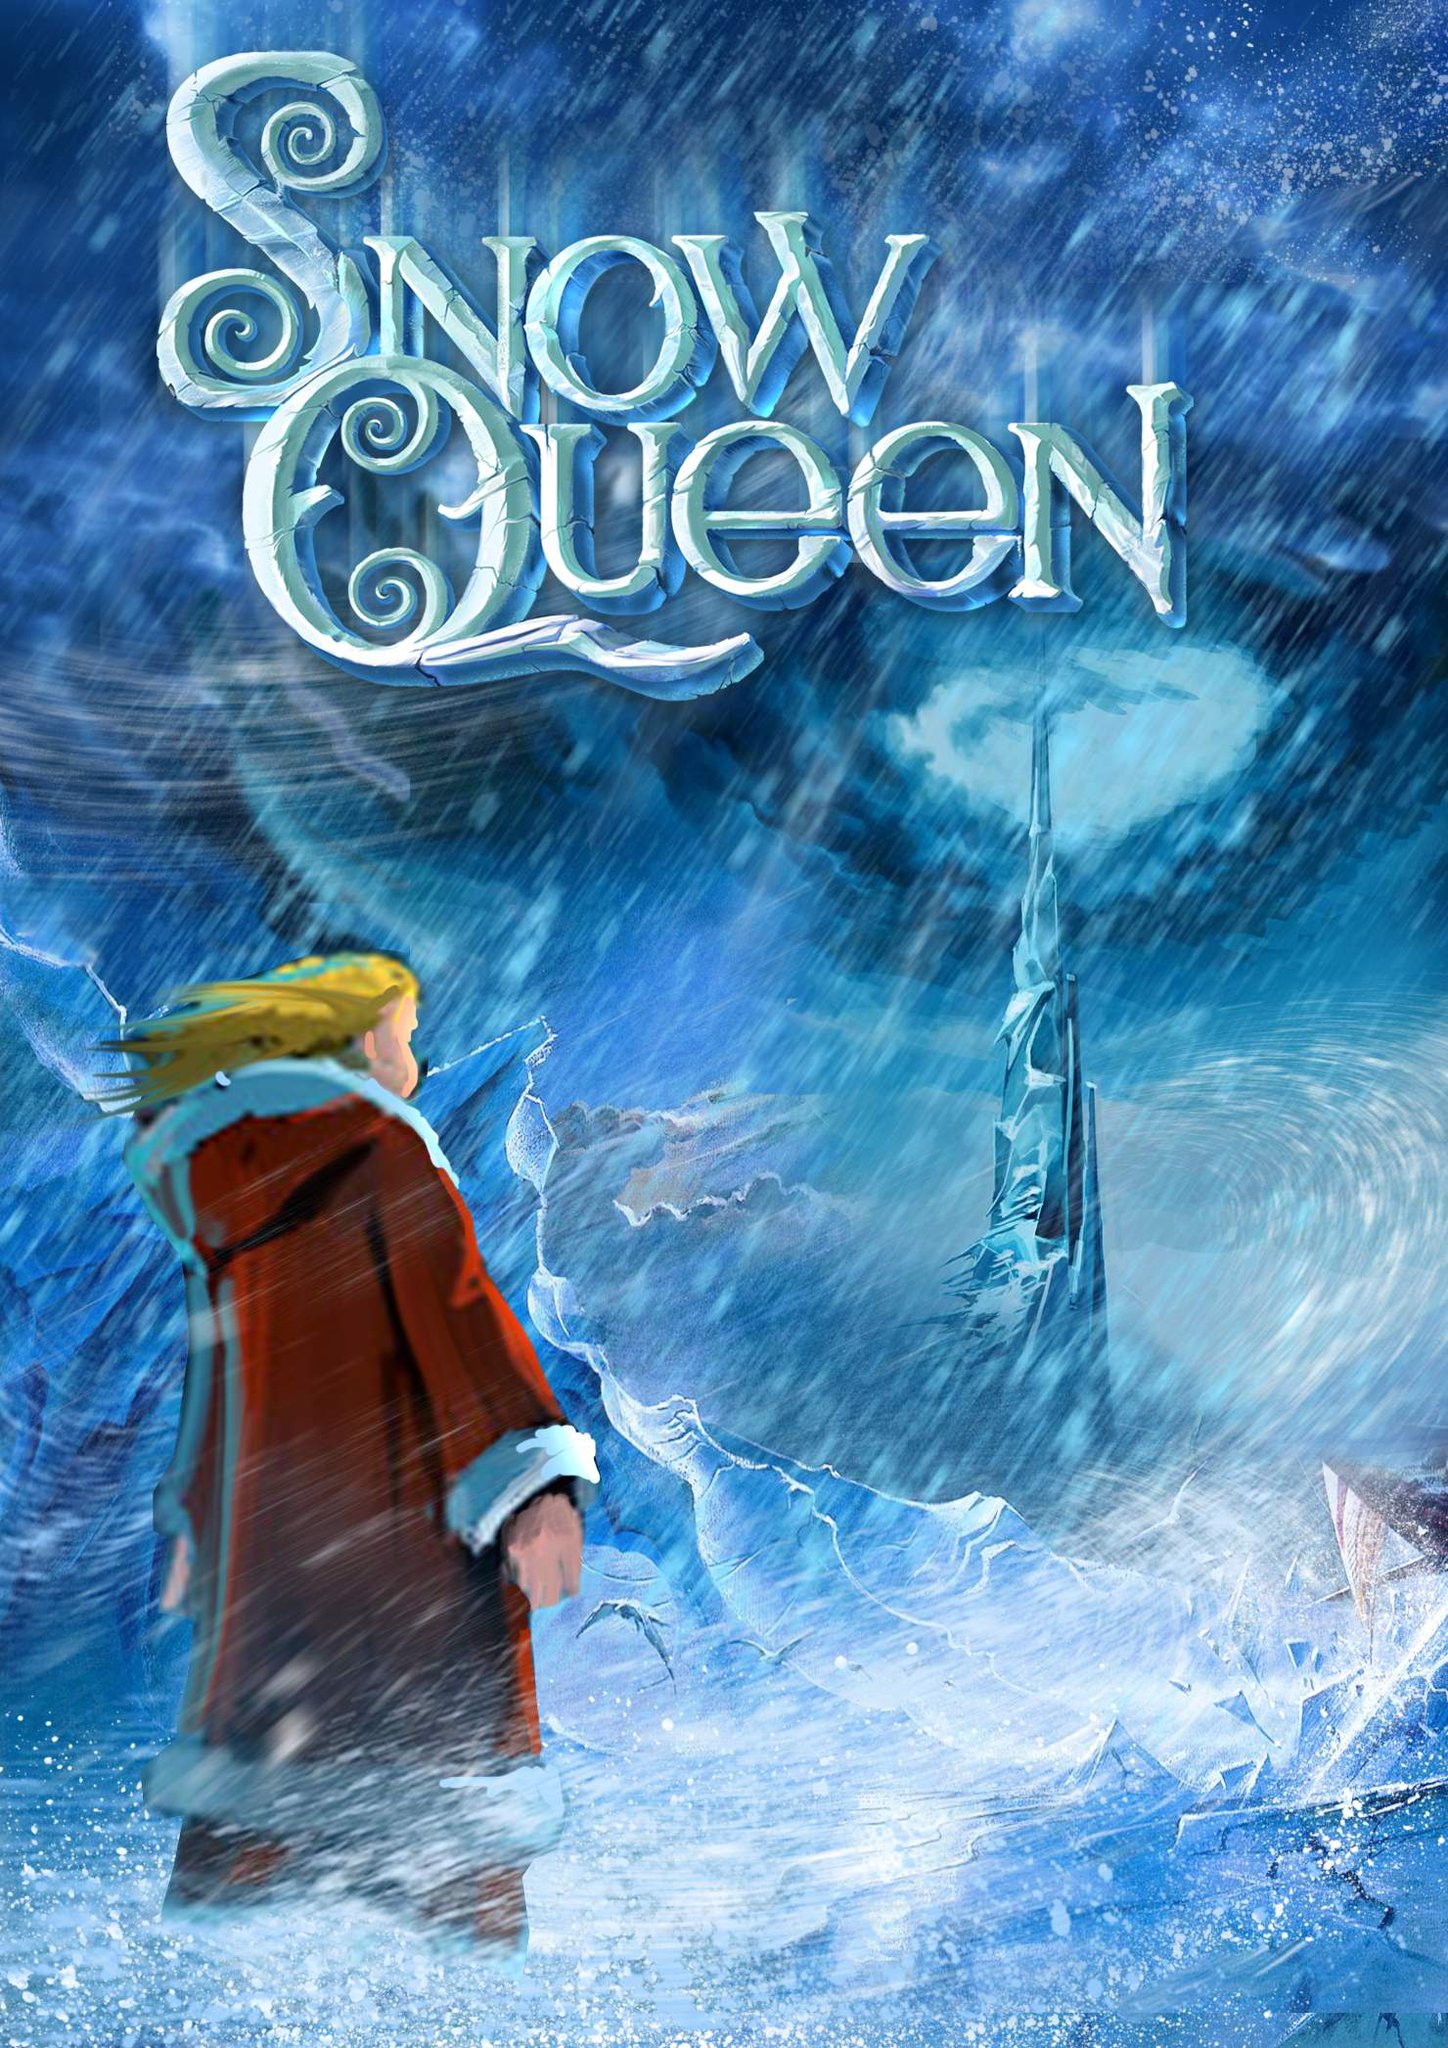 Постер к мультфильму «Снежная королева» (2012)